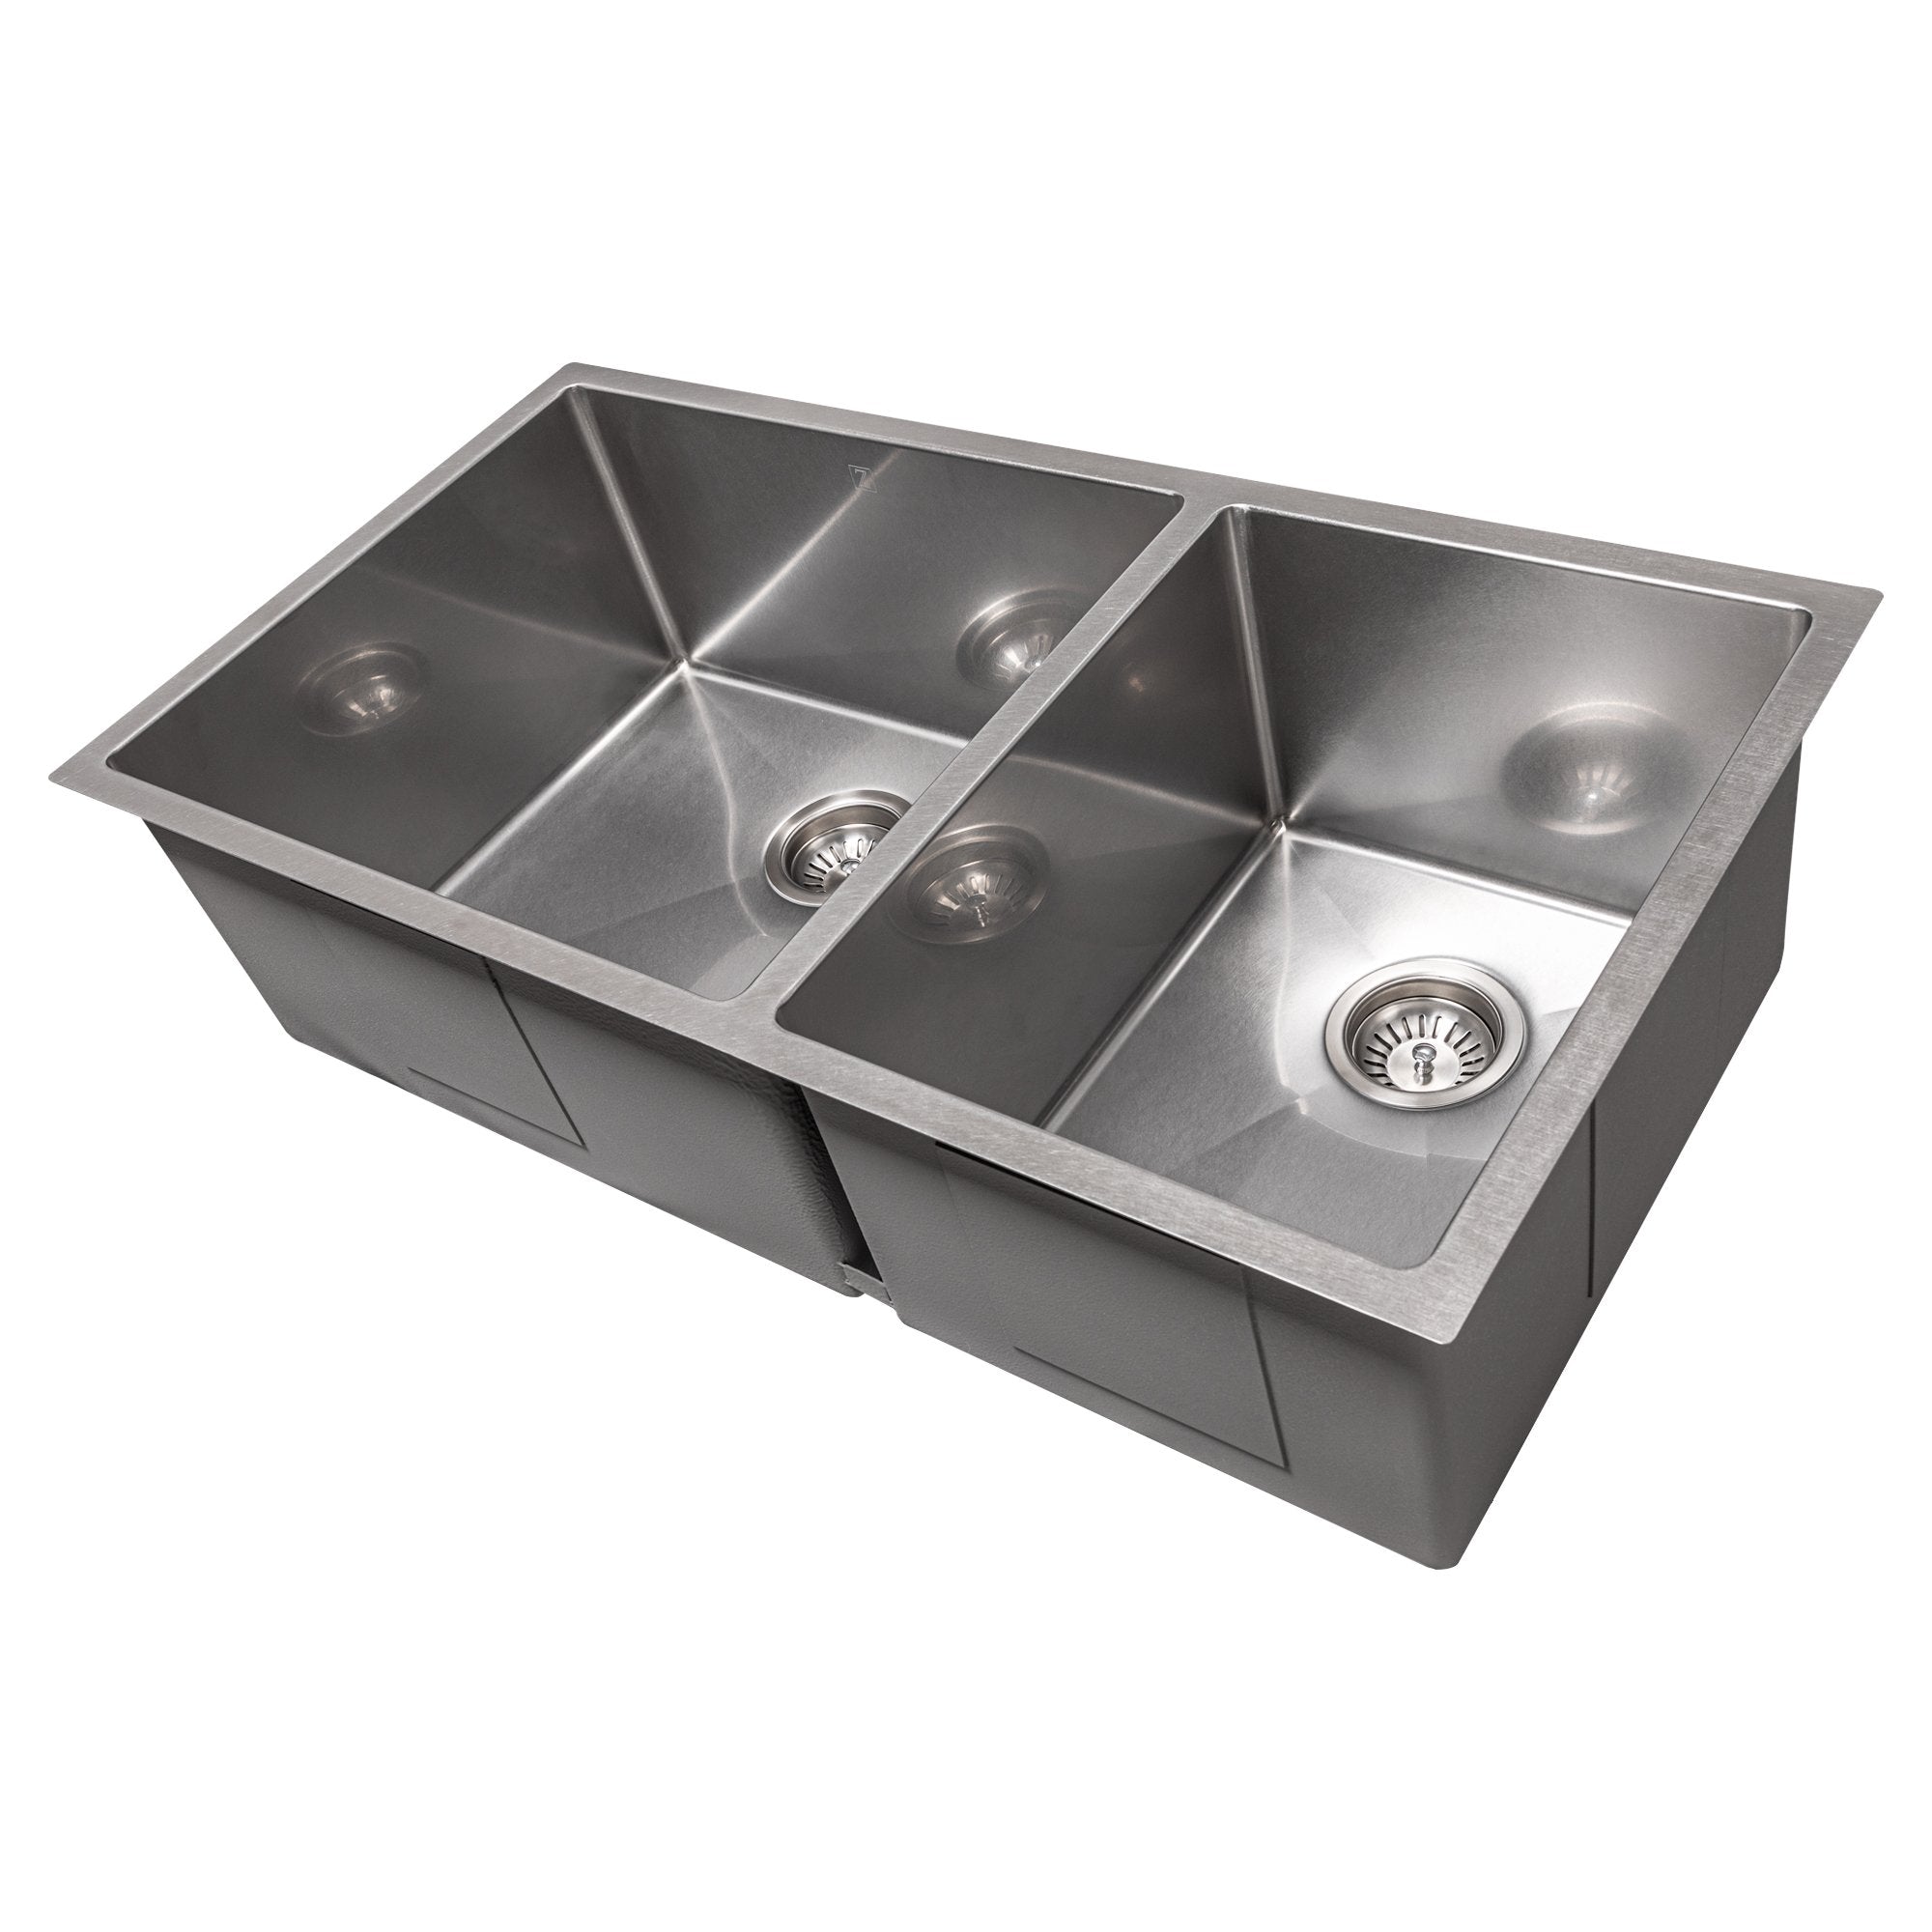 ZLINE 36 in. Chamonix Undermount Double Bowl Stainless Steel Kitchen Sink with Bottom Grid, SR60D-36